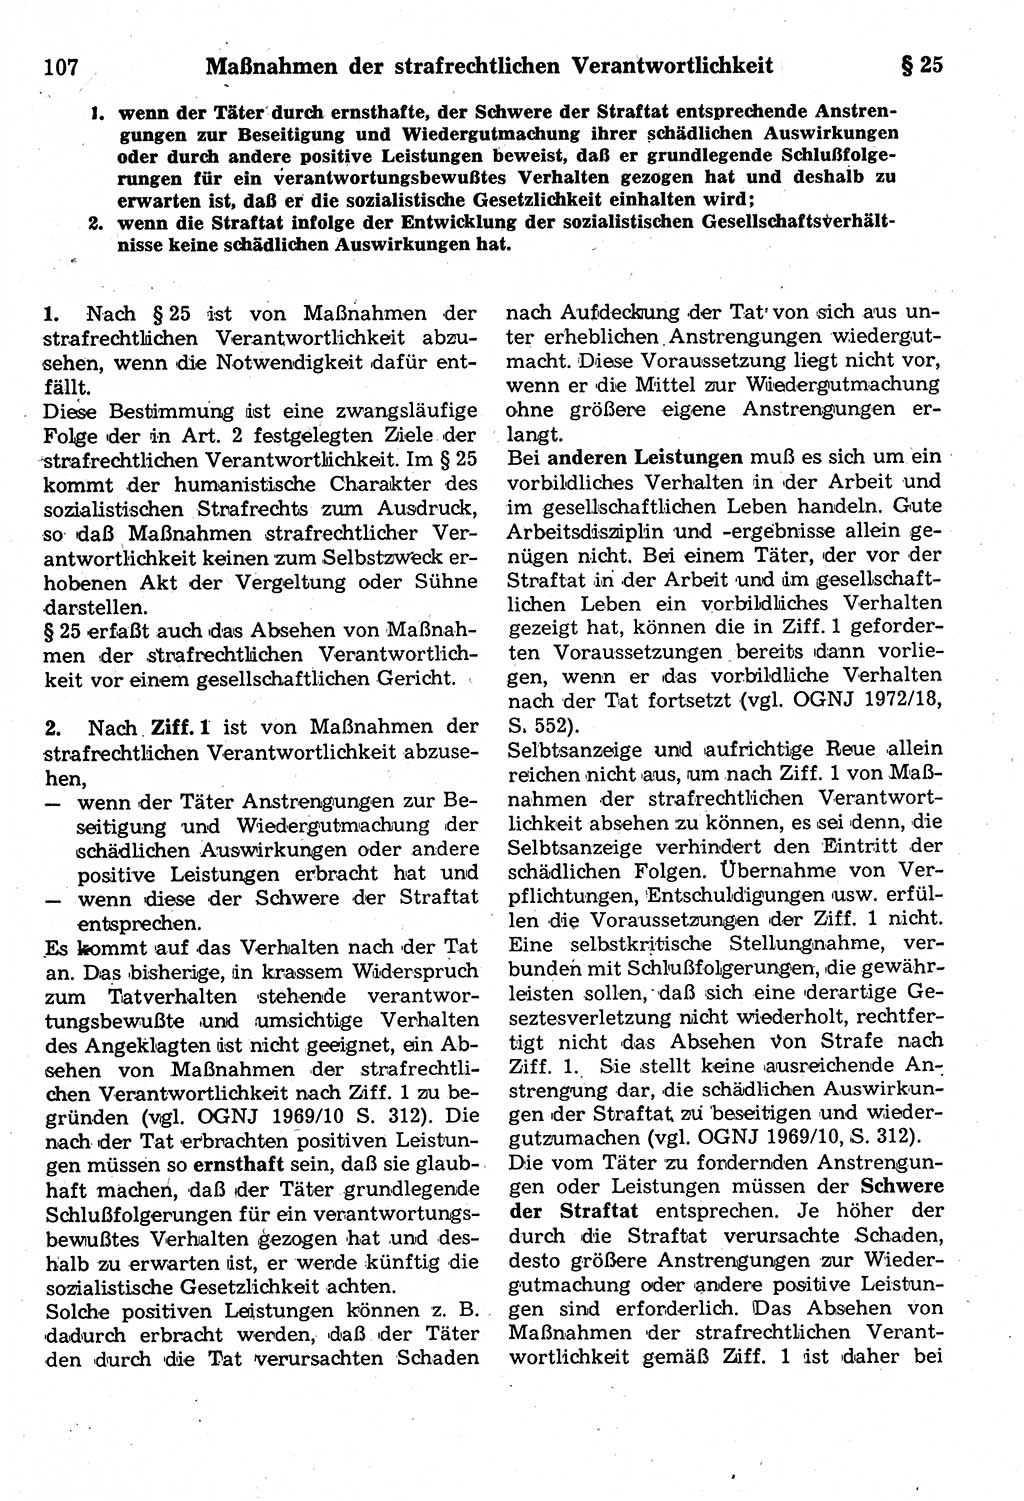 Strafrecht der Deutschen Demokratischen Republik (DDR), Kommentar zum Strafgesetzbuch (StGB) 1987, Seite 107 (Strafr. DDR Komm. StGB 1987, S. 107)